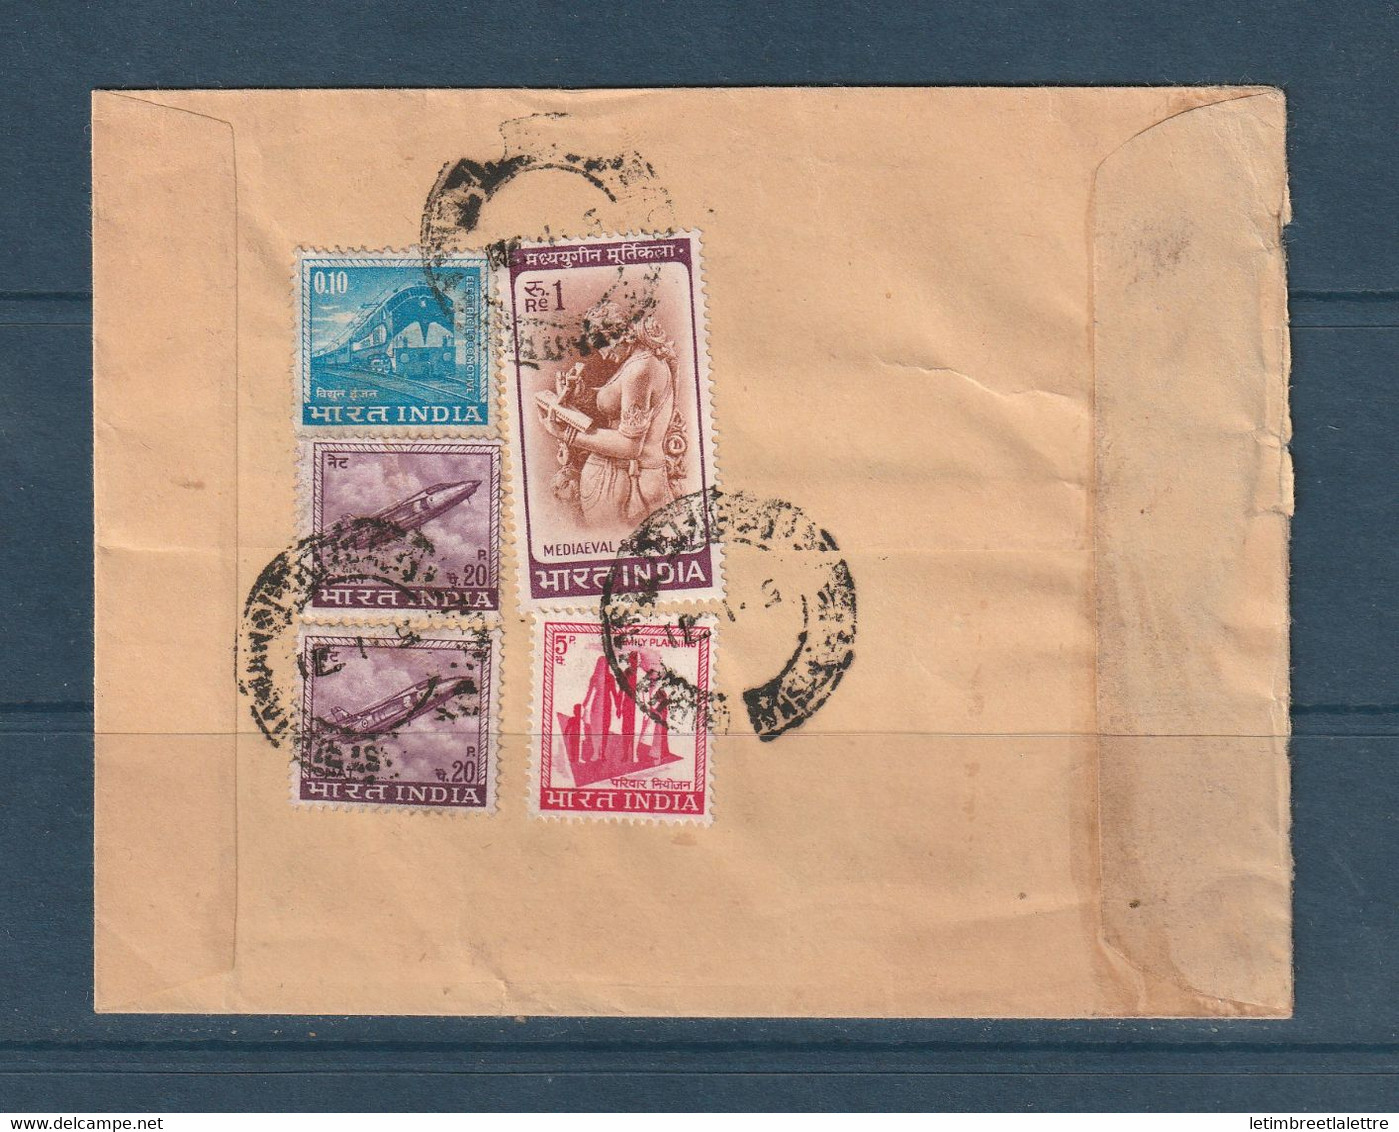 Inde - Poste Aérienne - Enveloppe Avec Griffe India Government Service Pour La France - Militärpostmarken